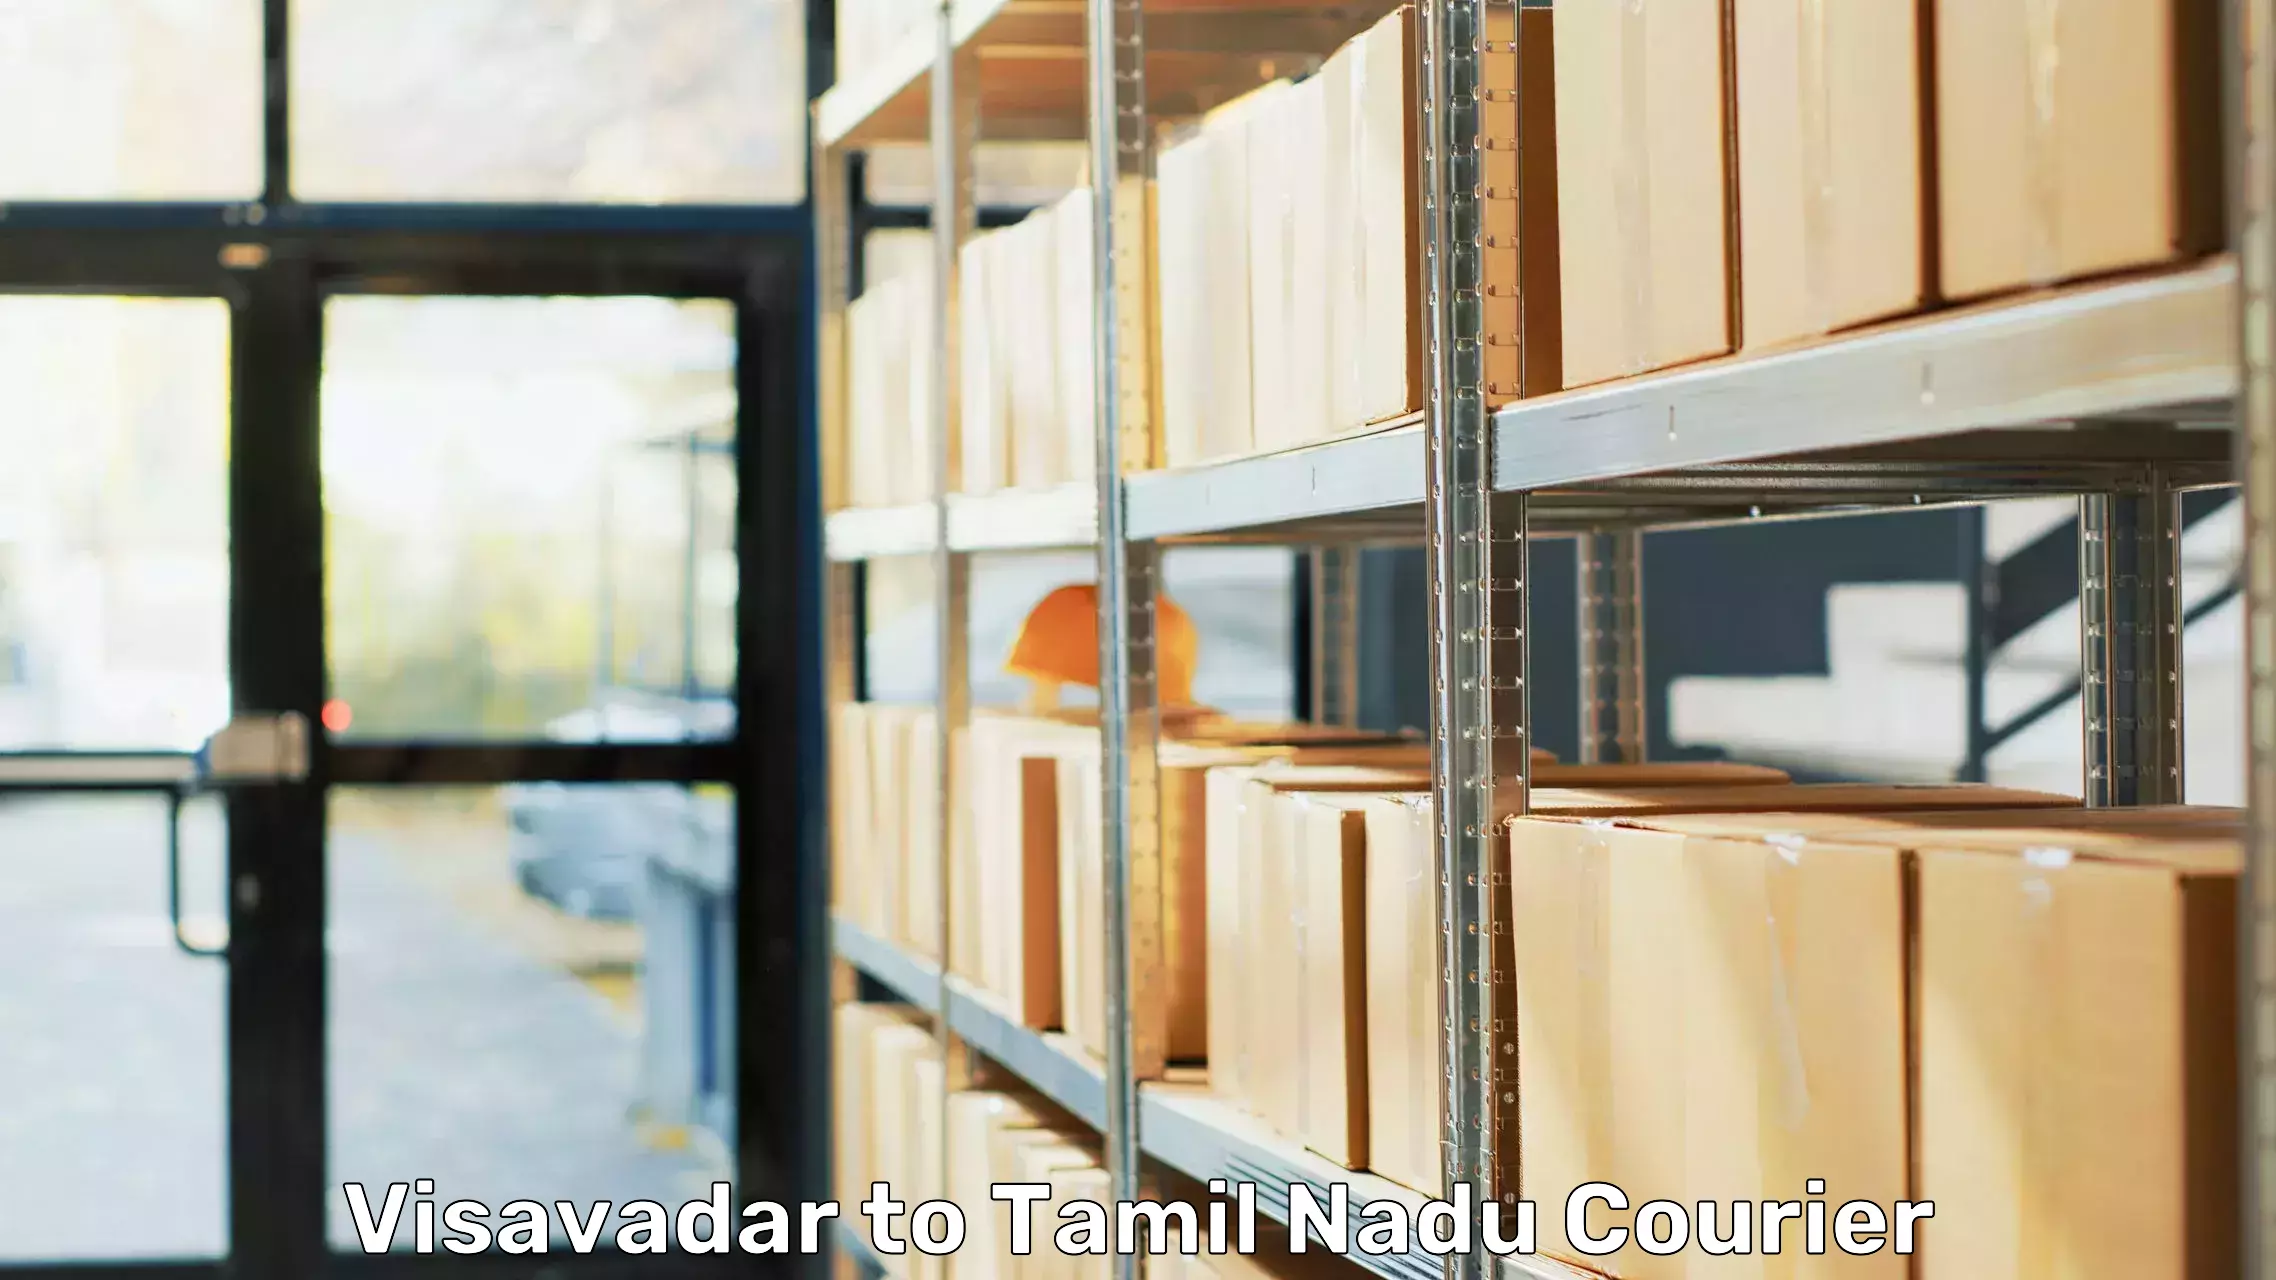 Furniture moving service Visavadar to Thiruvadanai